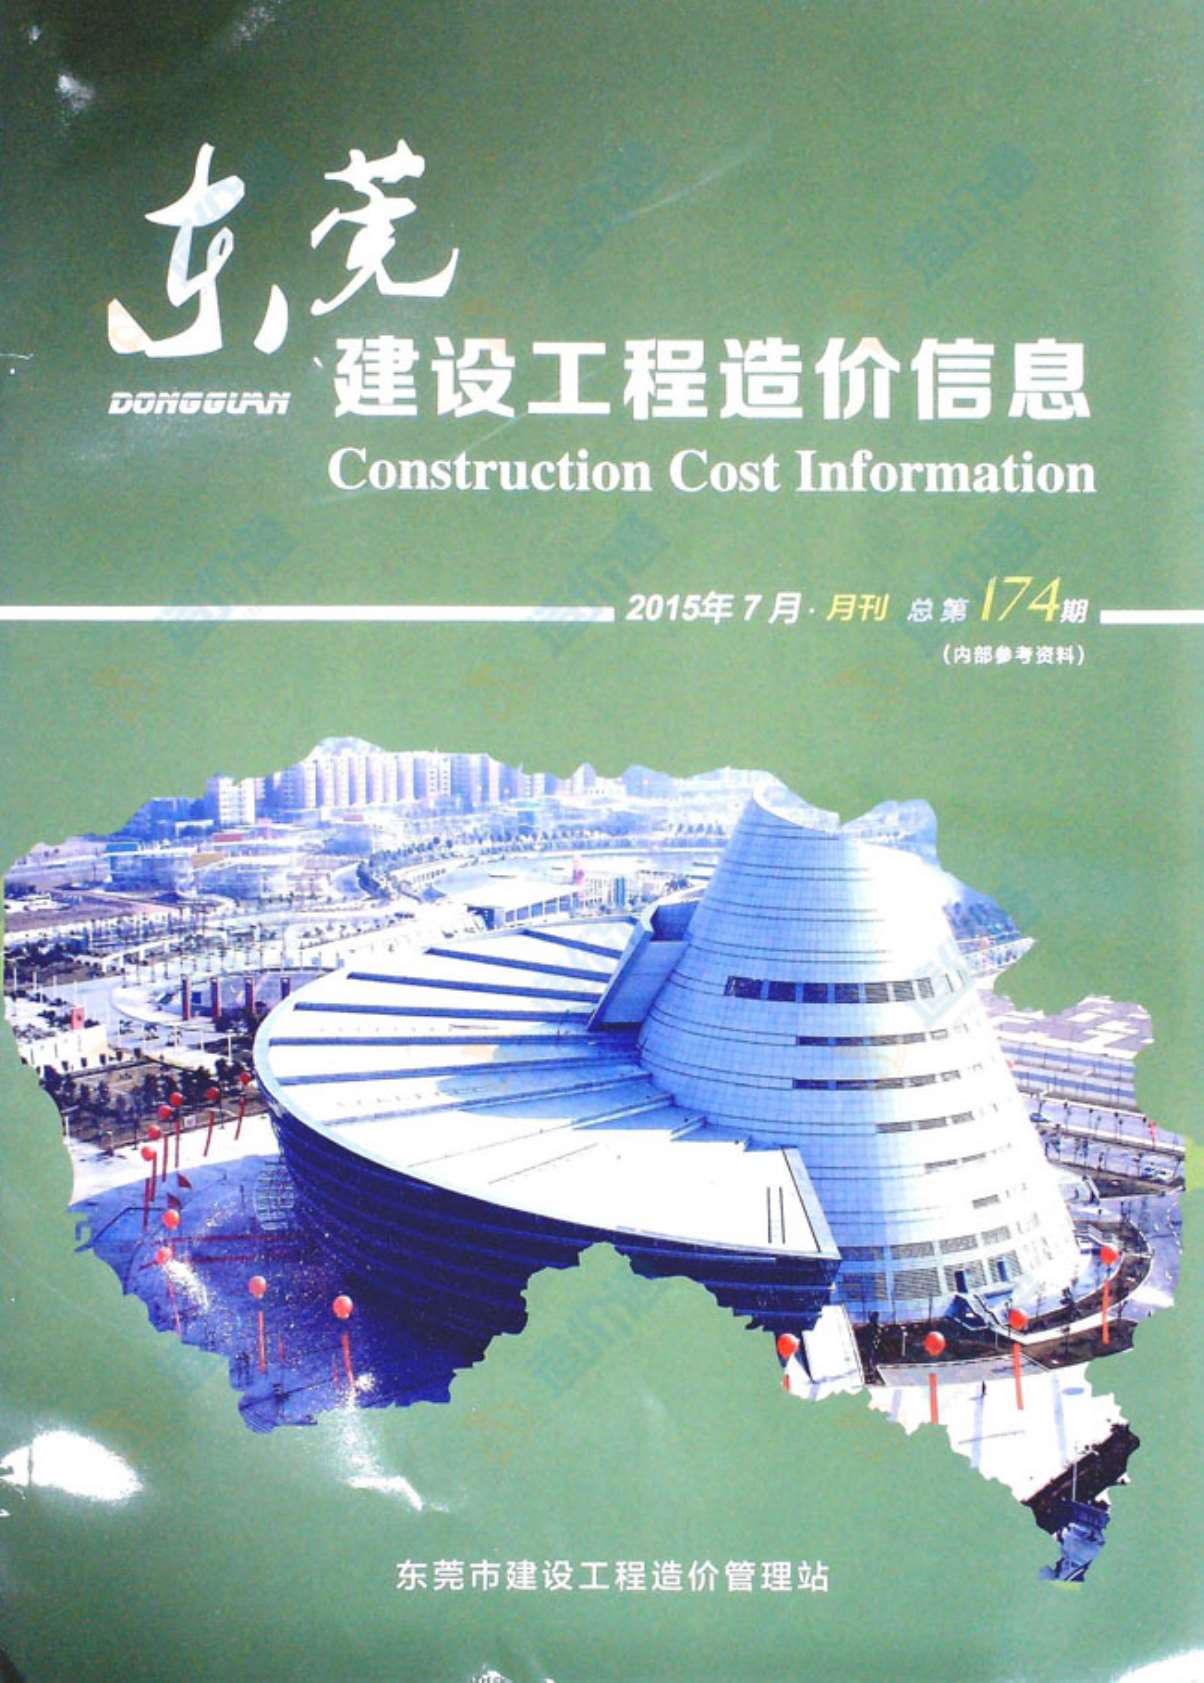 东莞市2015年7月建设工程造价信息